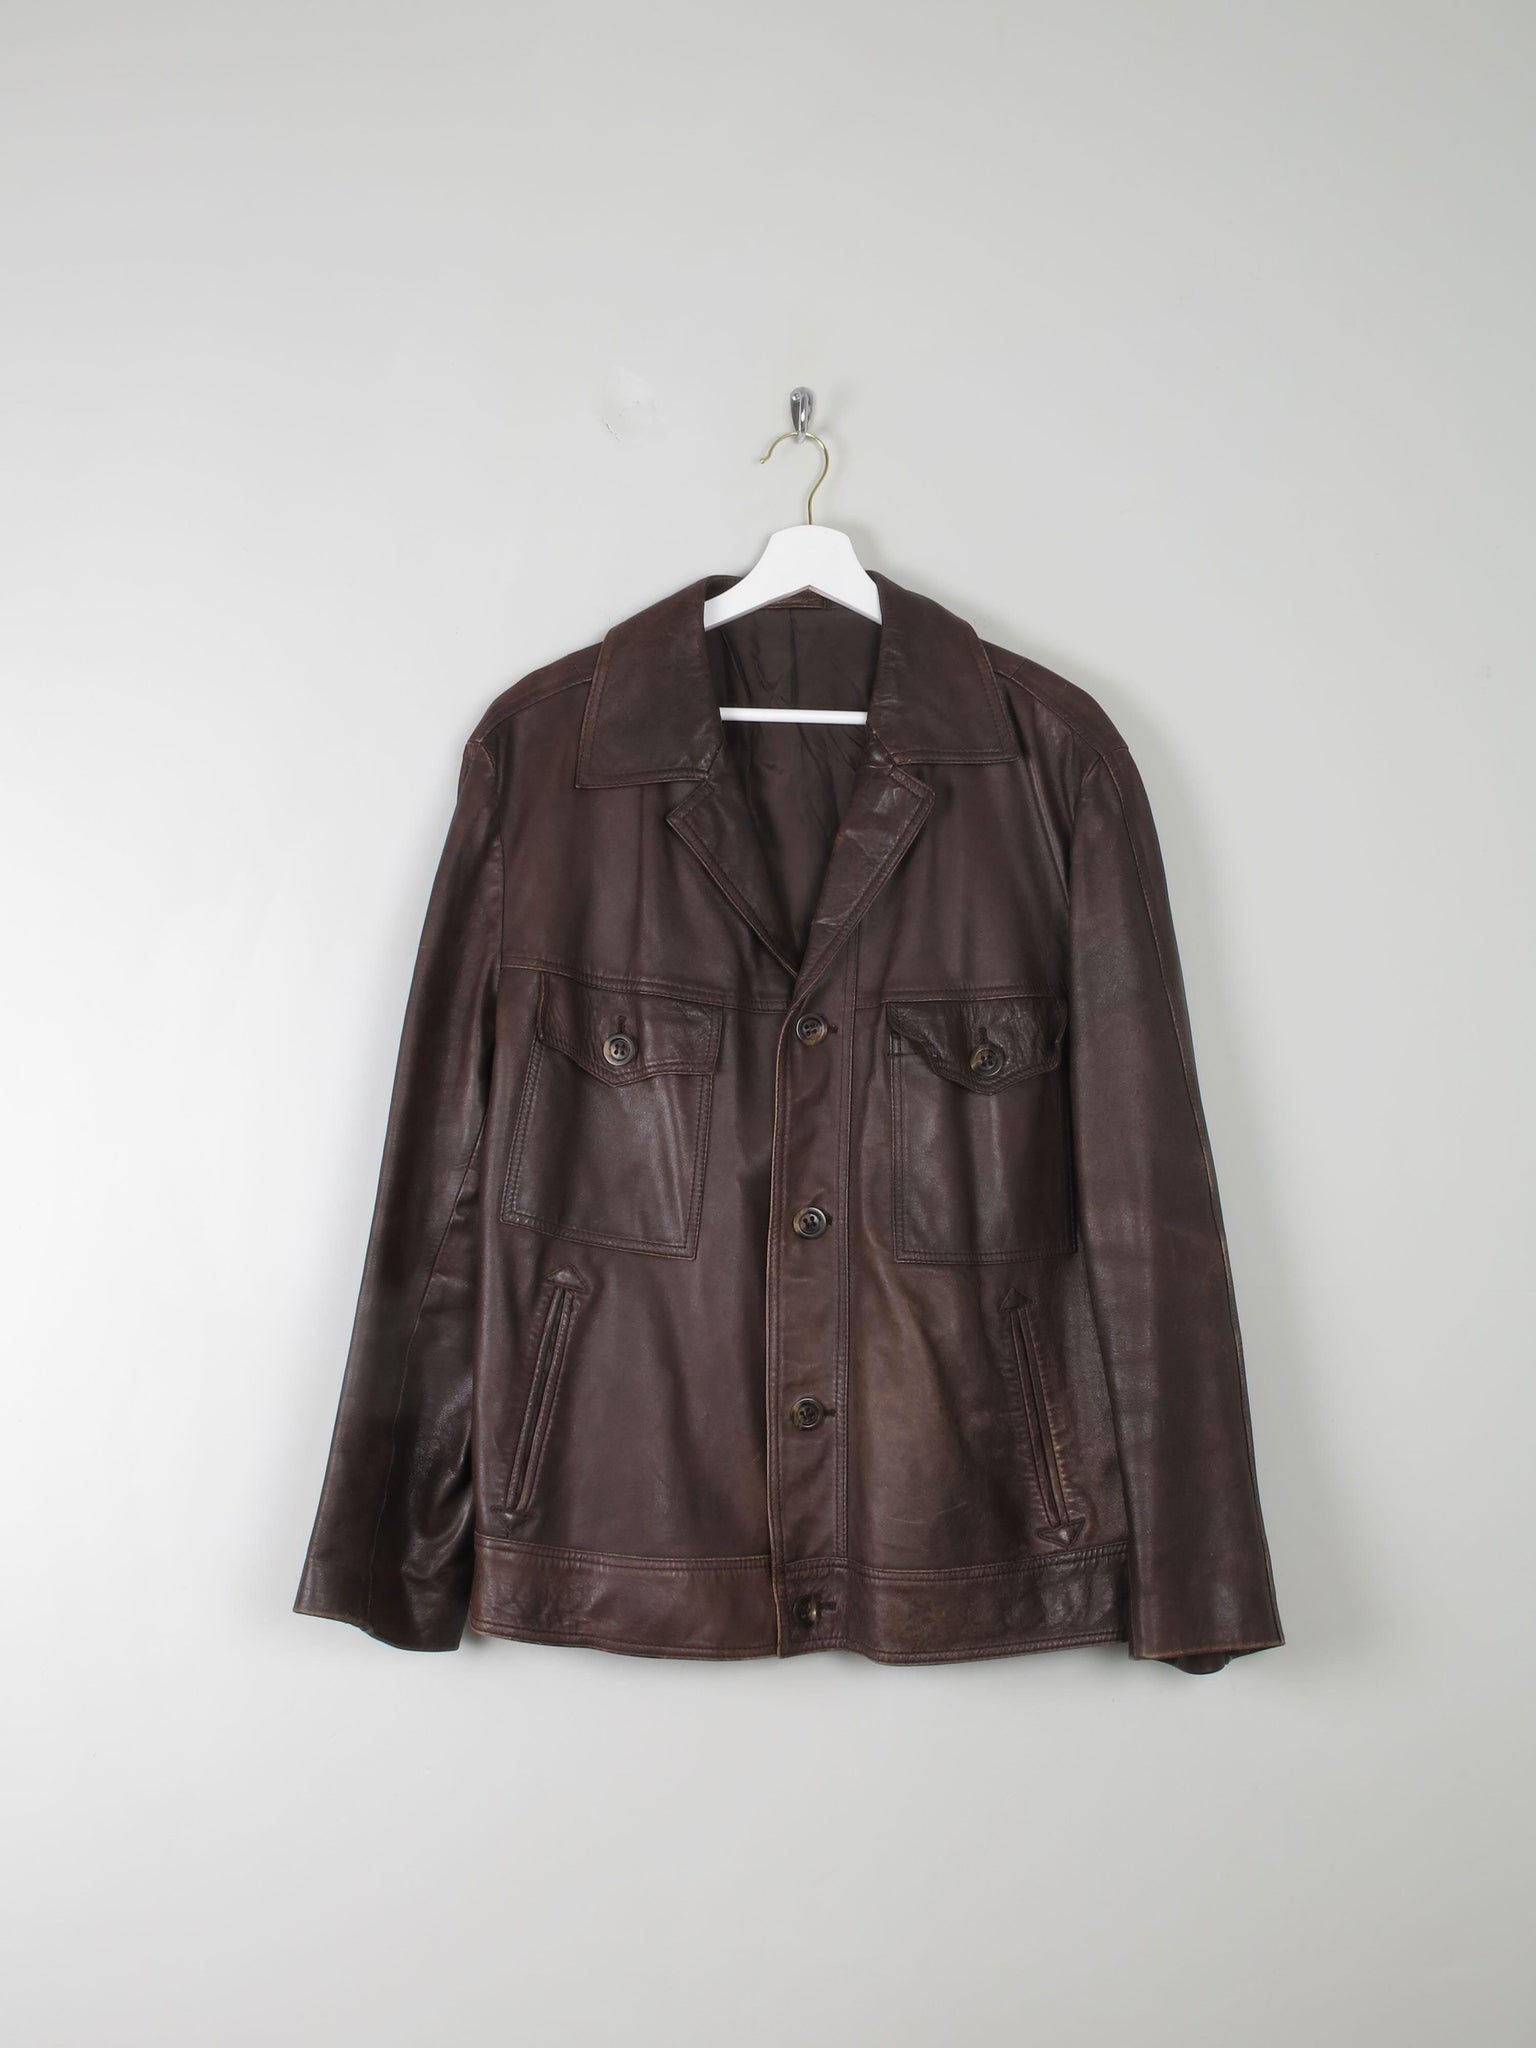 Men's Vintage Brown Leather Jacket L/XL - The Harlequin